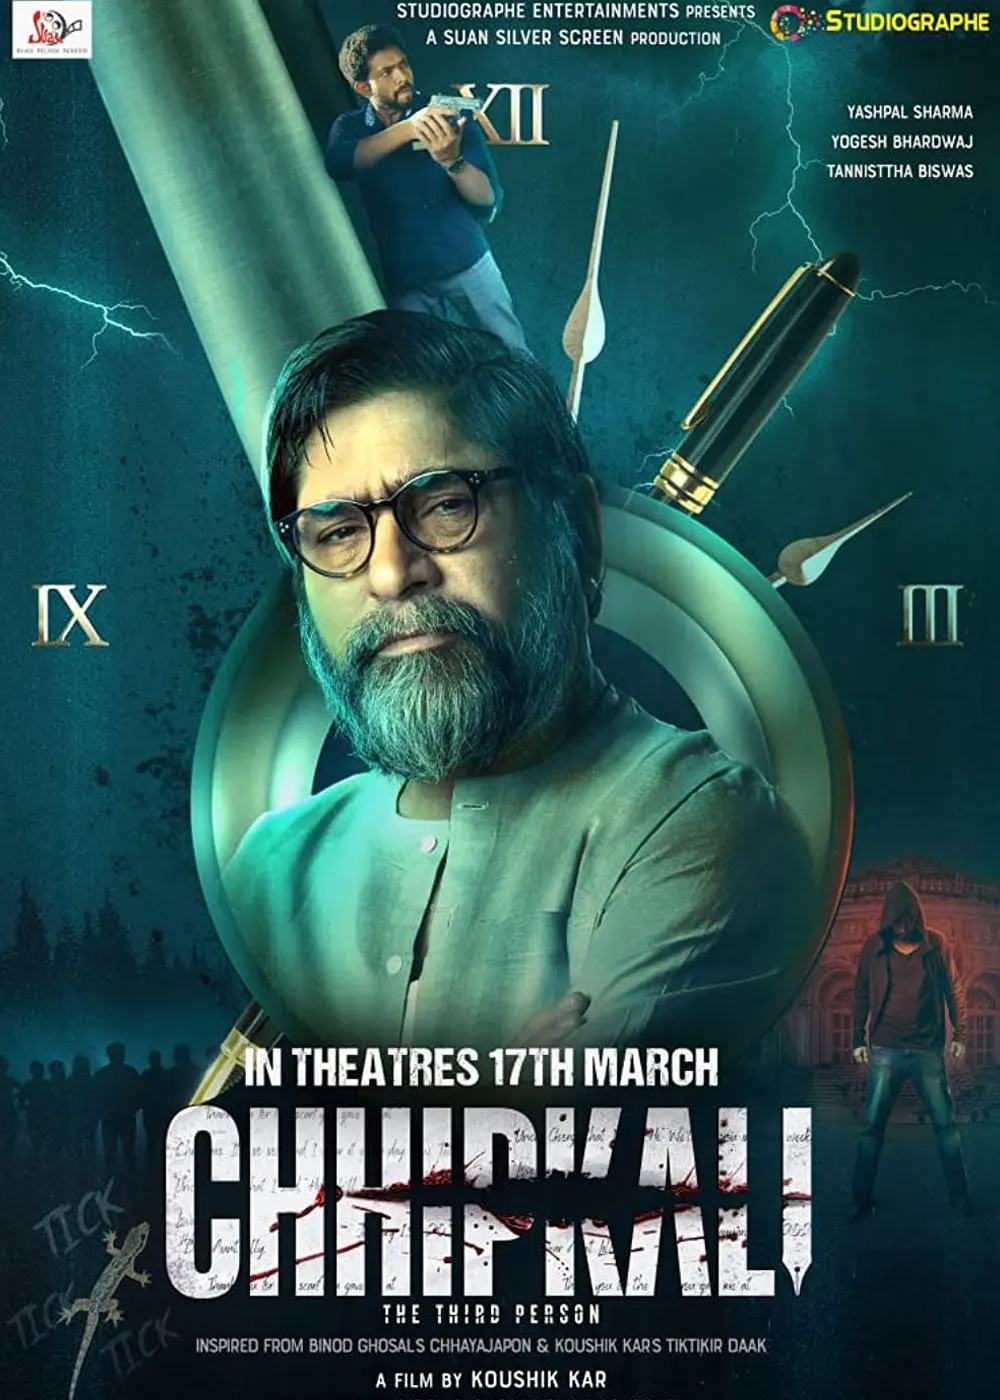 Yashpal Sharma in Chhipkali movie